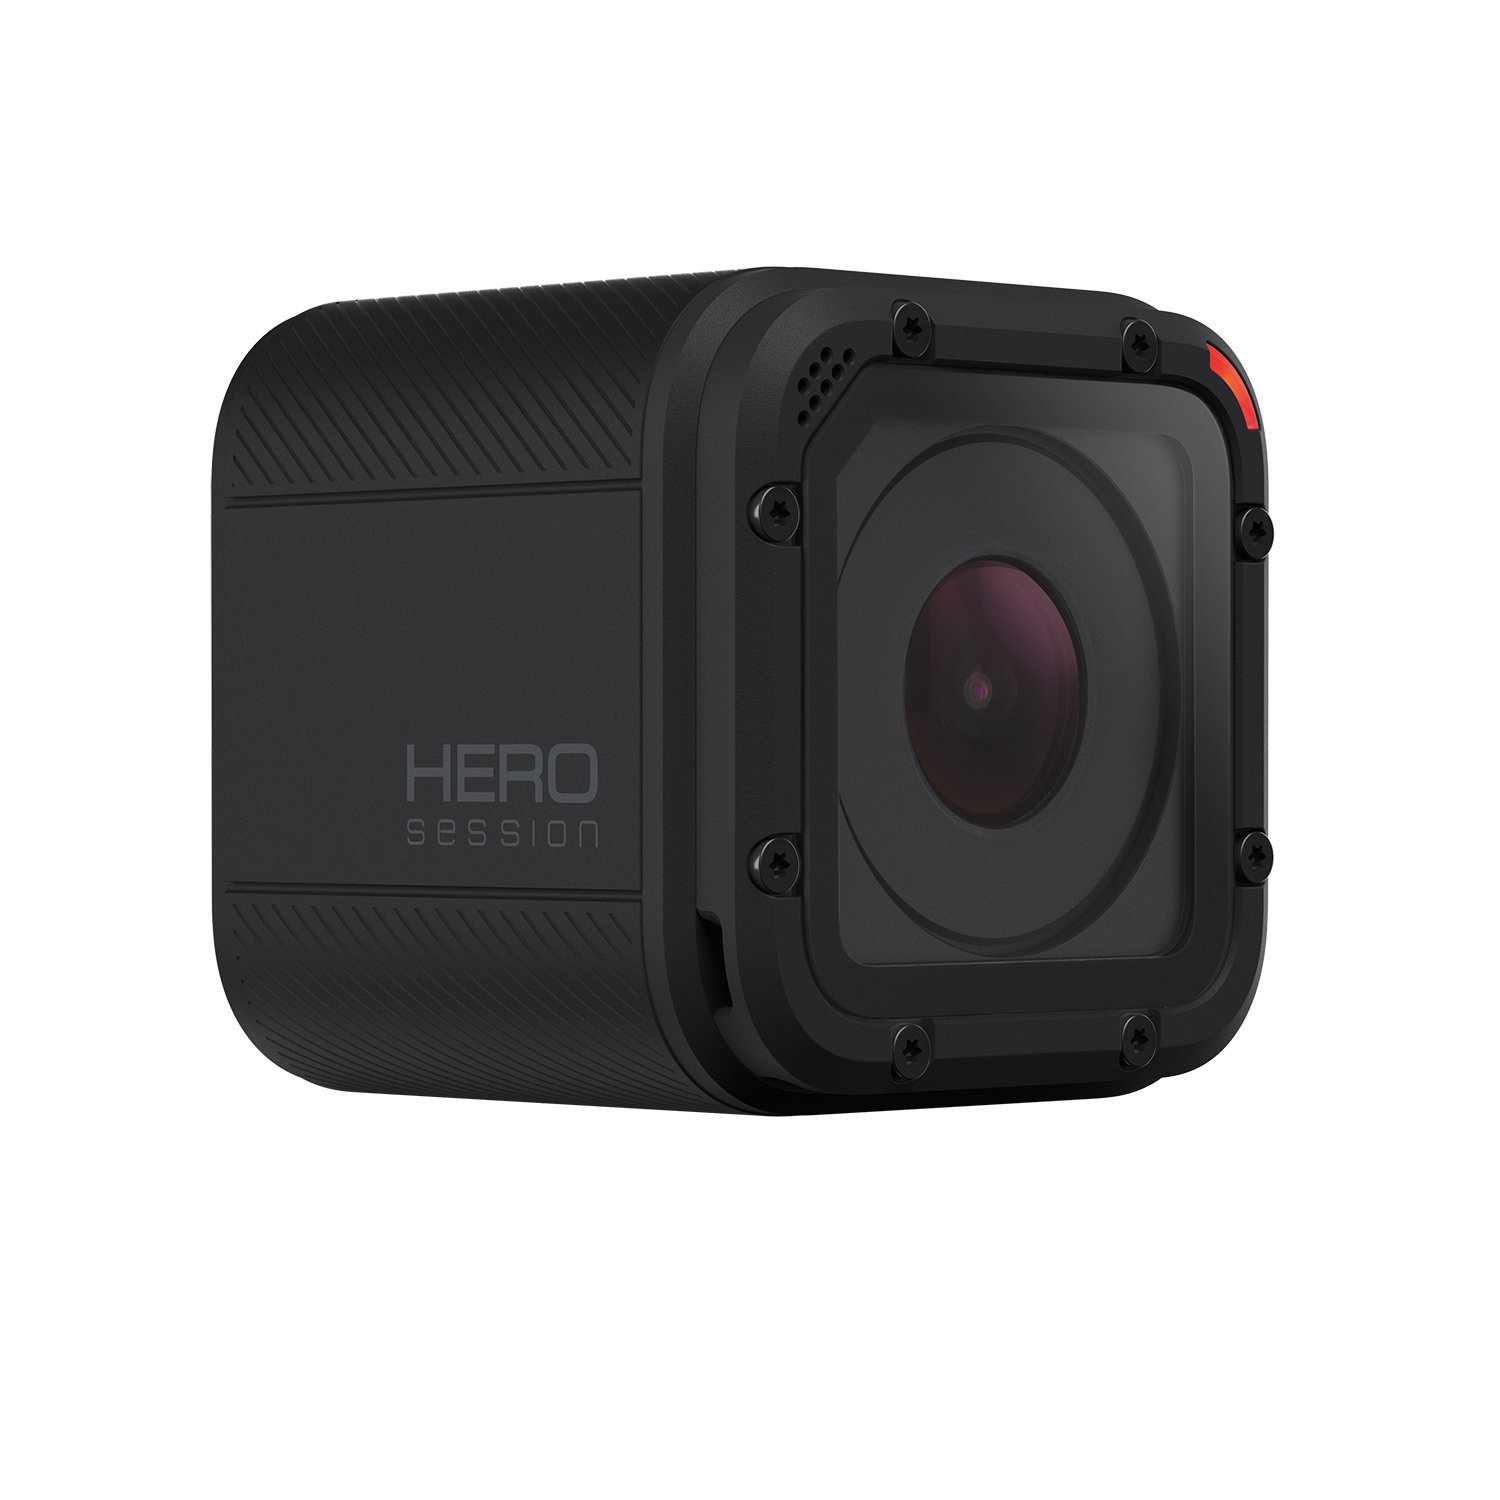 GoPro Hero4 Session 相機規格、價錢及介紹文- DCFever.com